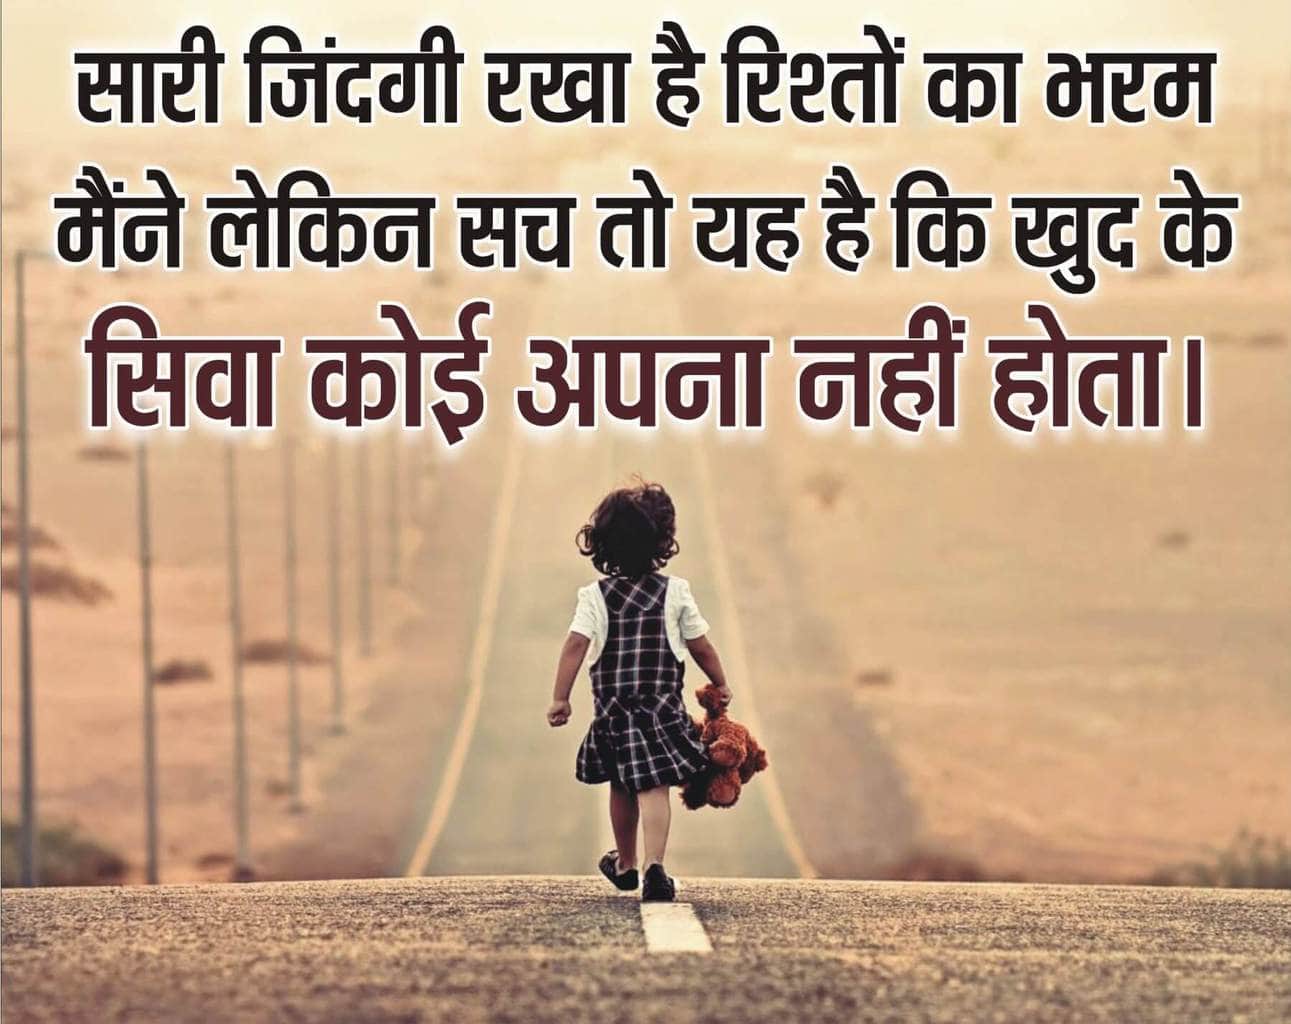 life quotes short in hindi Birthonlaborday attitude learn digitalizand